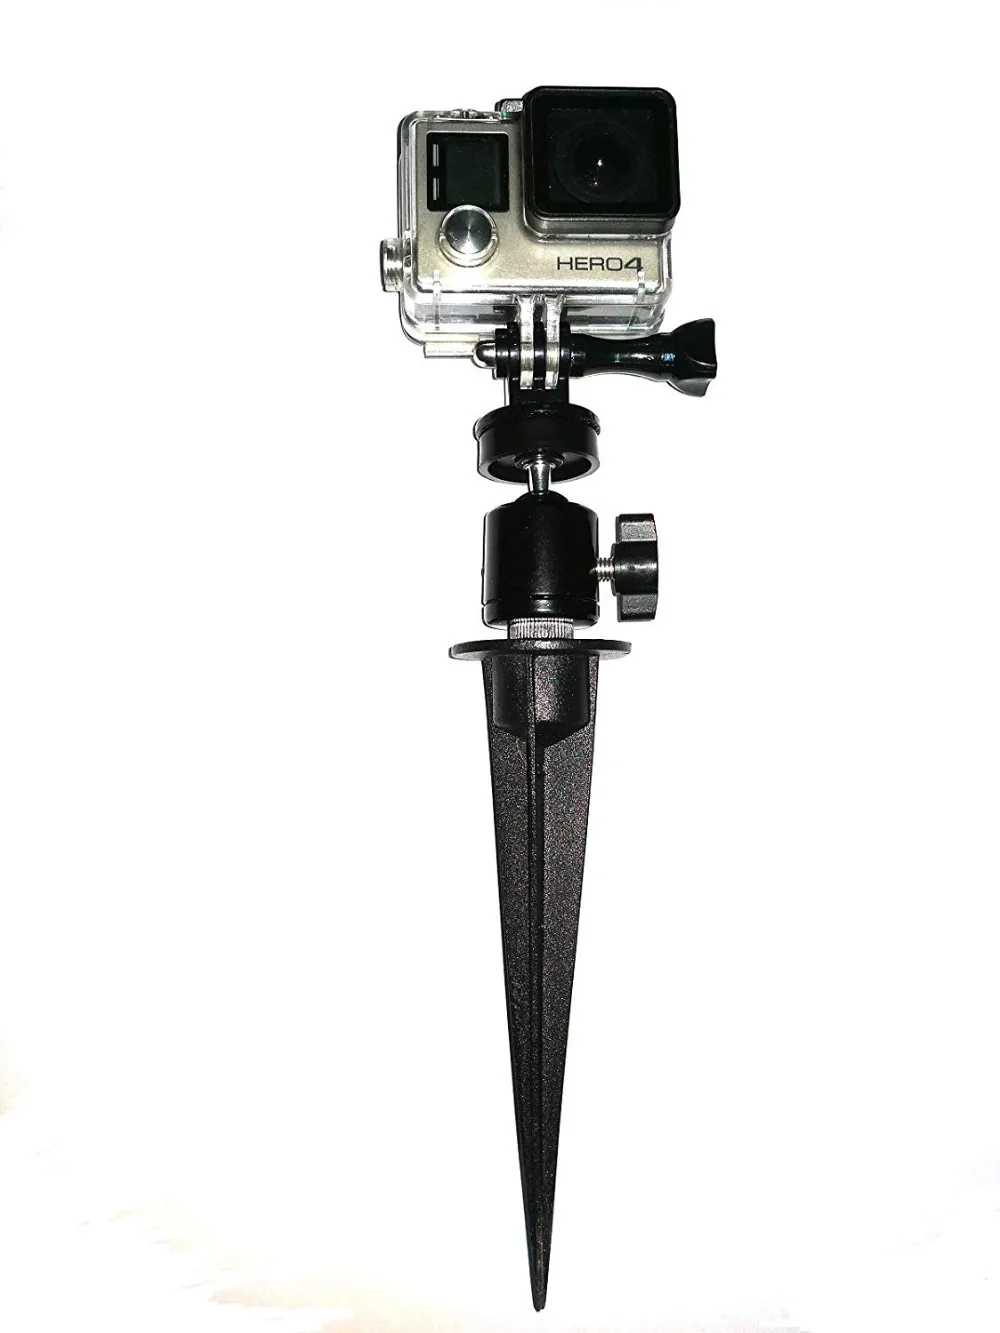 Легкая камера Спайк штатив крепление w/1/4 ''20 шаровая Головка Для Gopro, SJCAM, DSLR, 360 Trail камеры s и смартфонов, алюминий